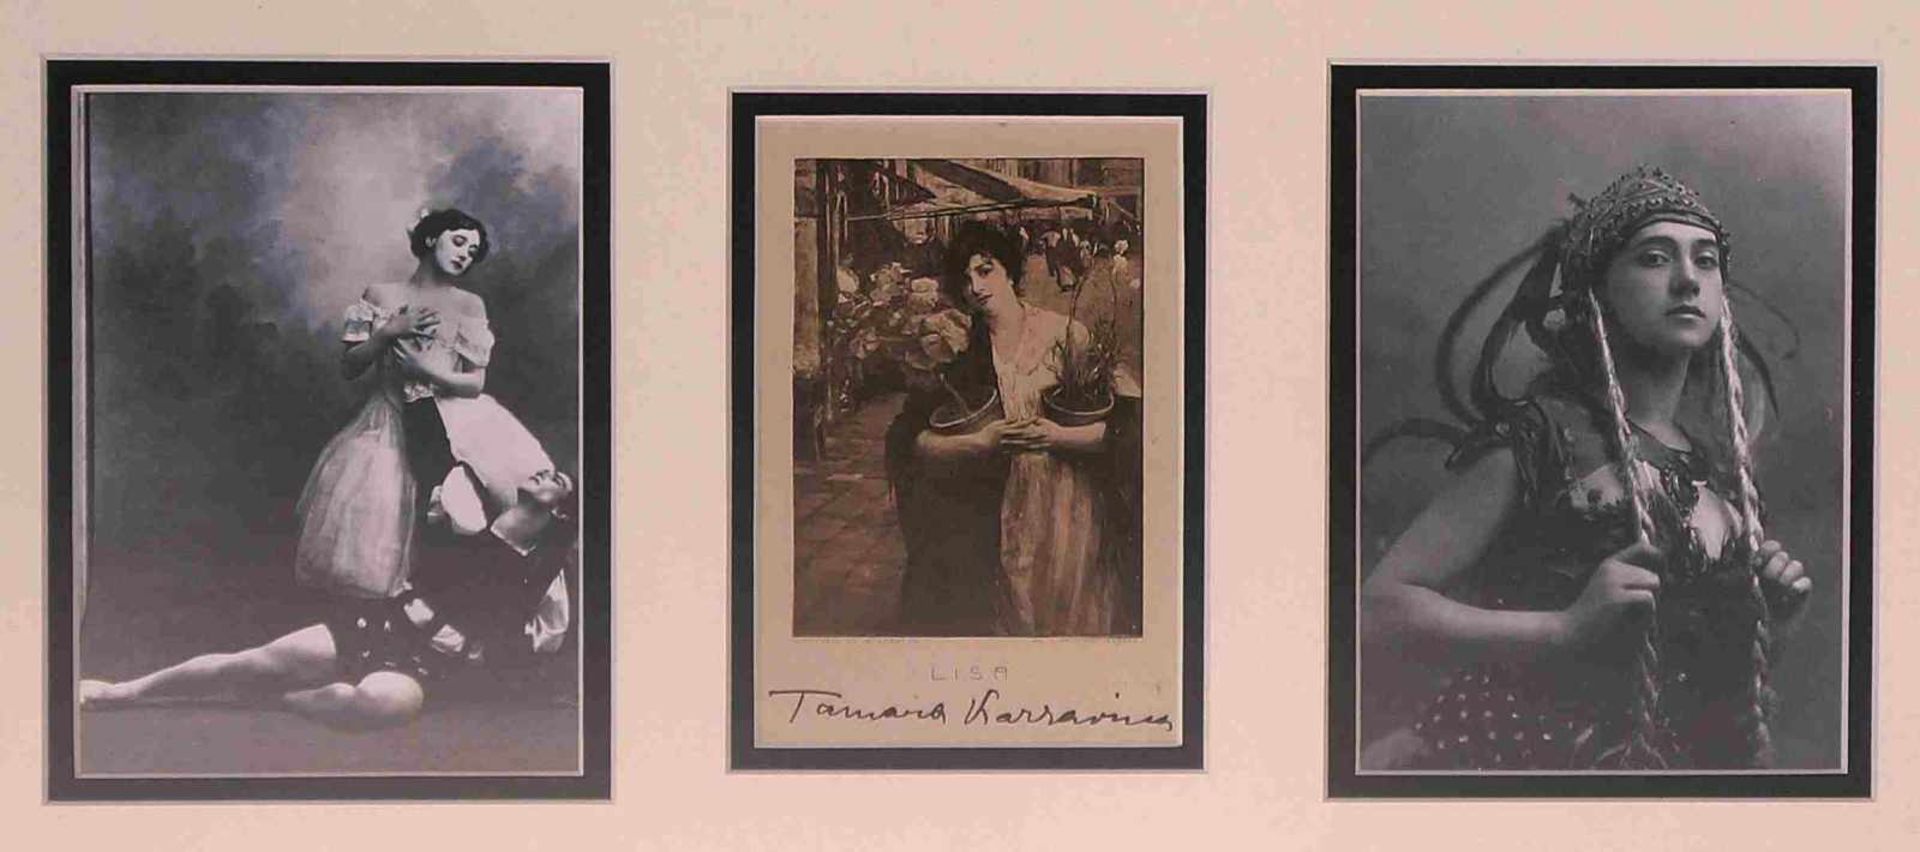 [BALLETS RUSSES, TAMARA KARSAVINA] 2 Fotos von Tamara Karsavina und 1 Postkarte mit Autogramm von Т.